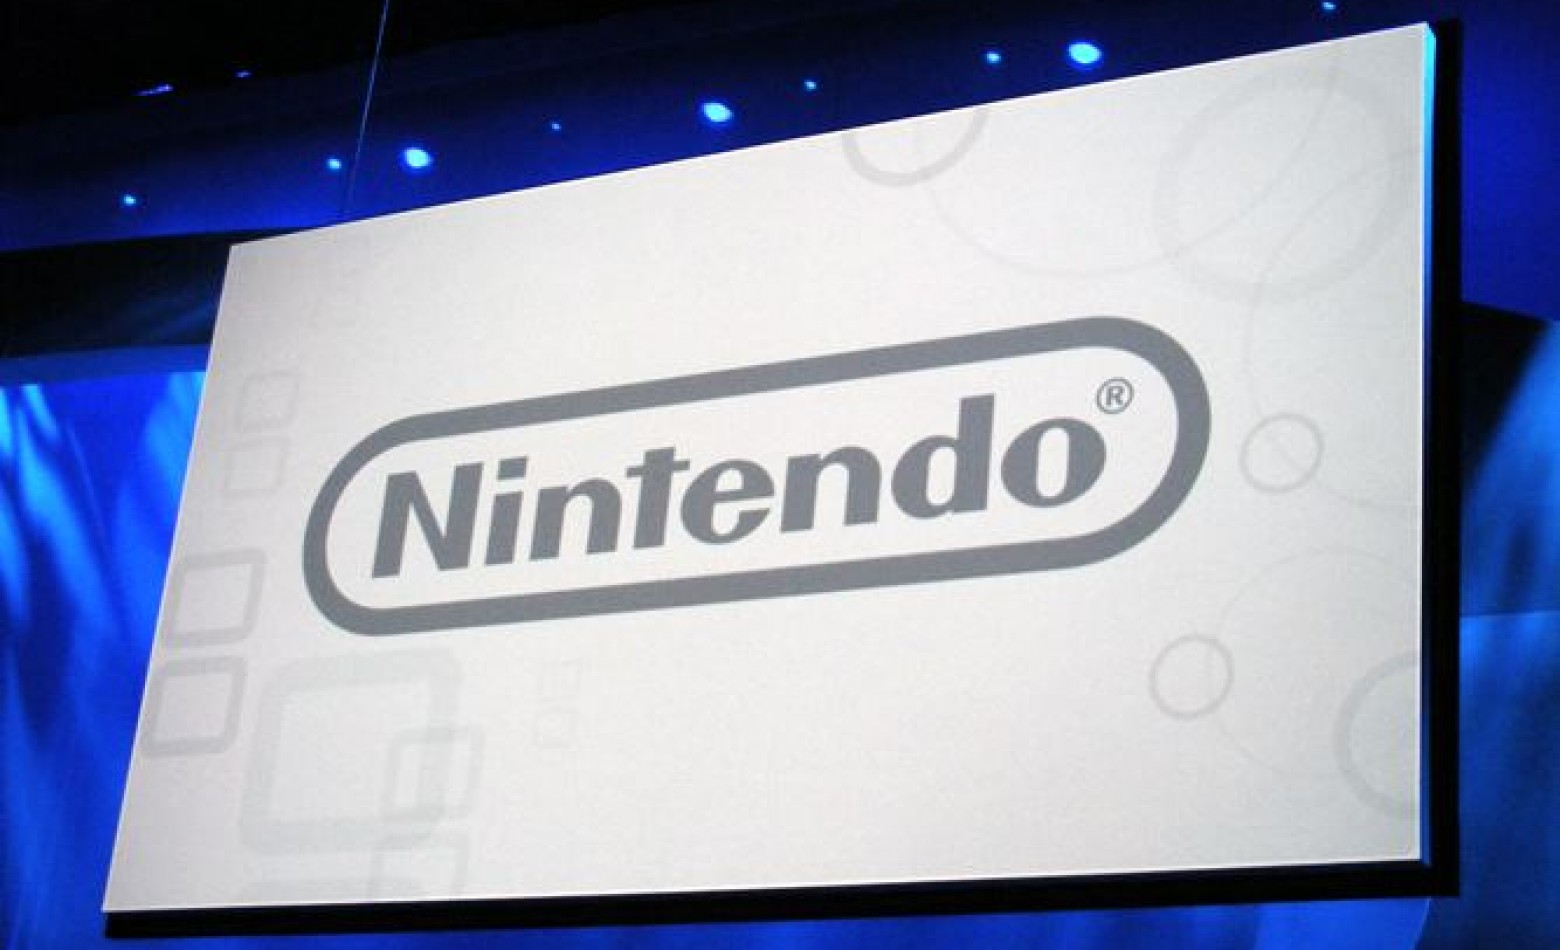 Nintendo abre site dedicado à E3 2014